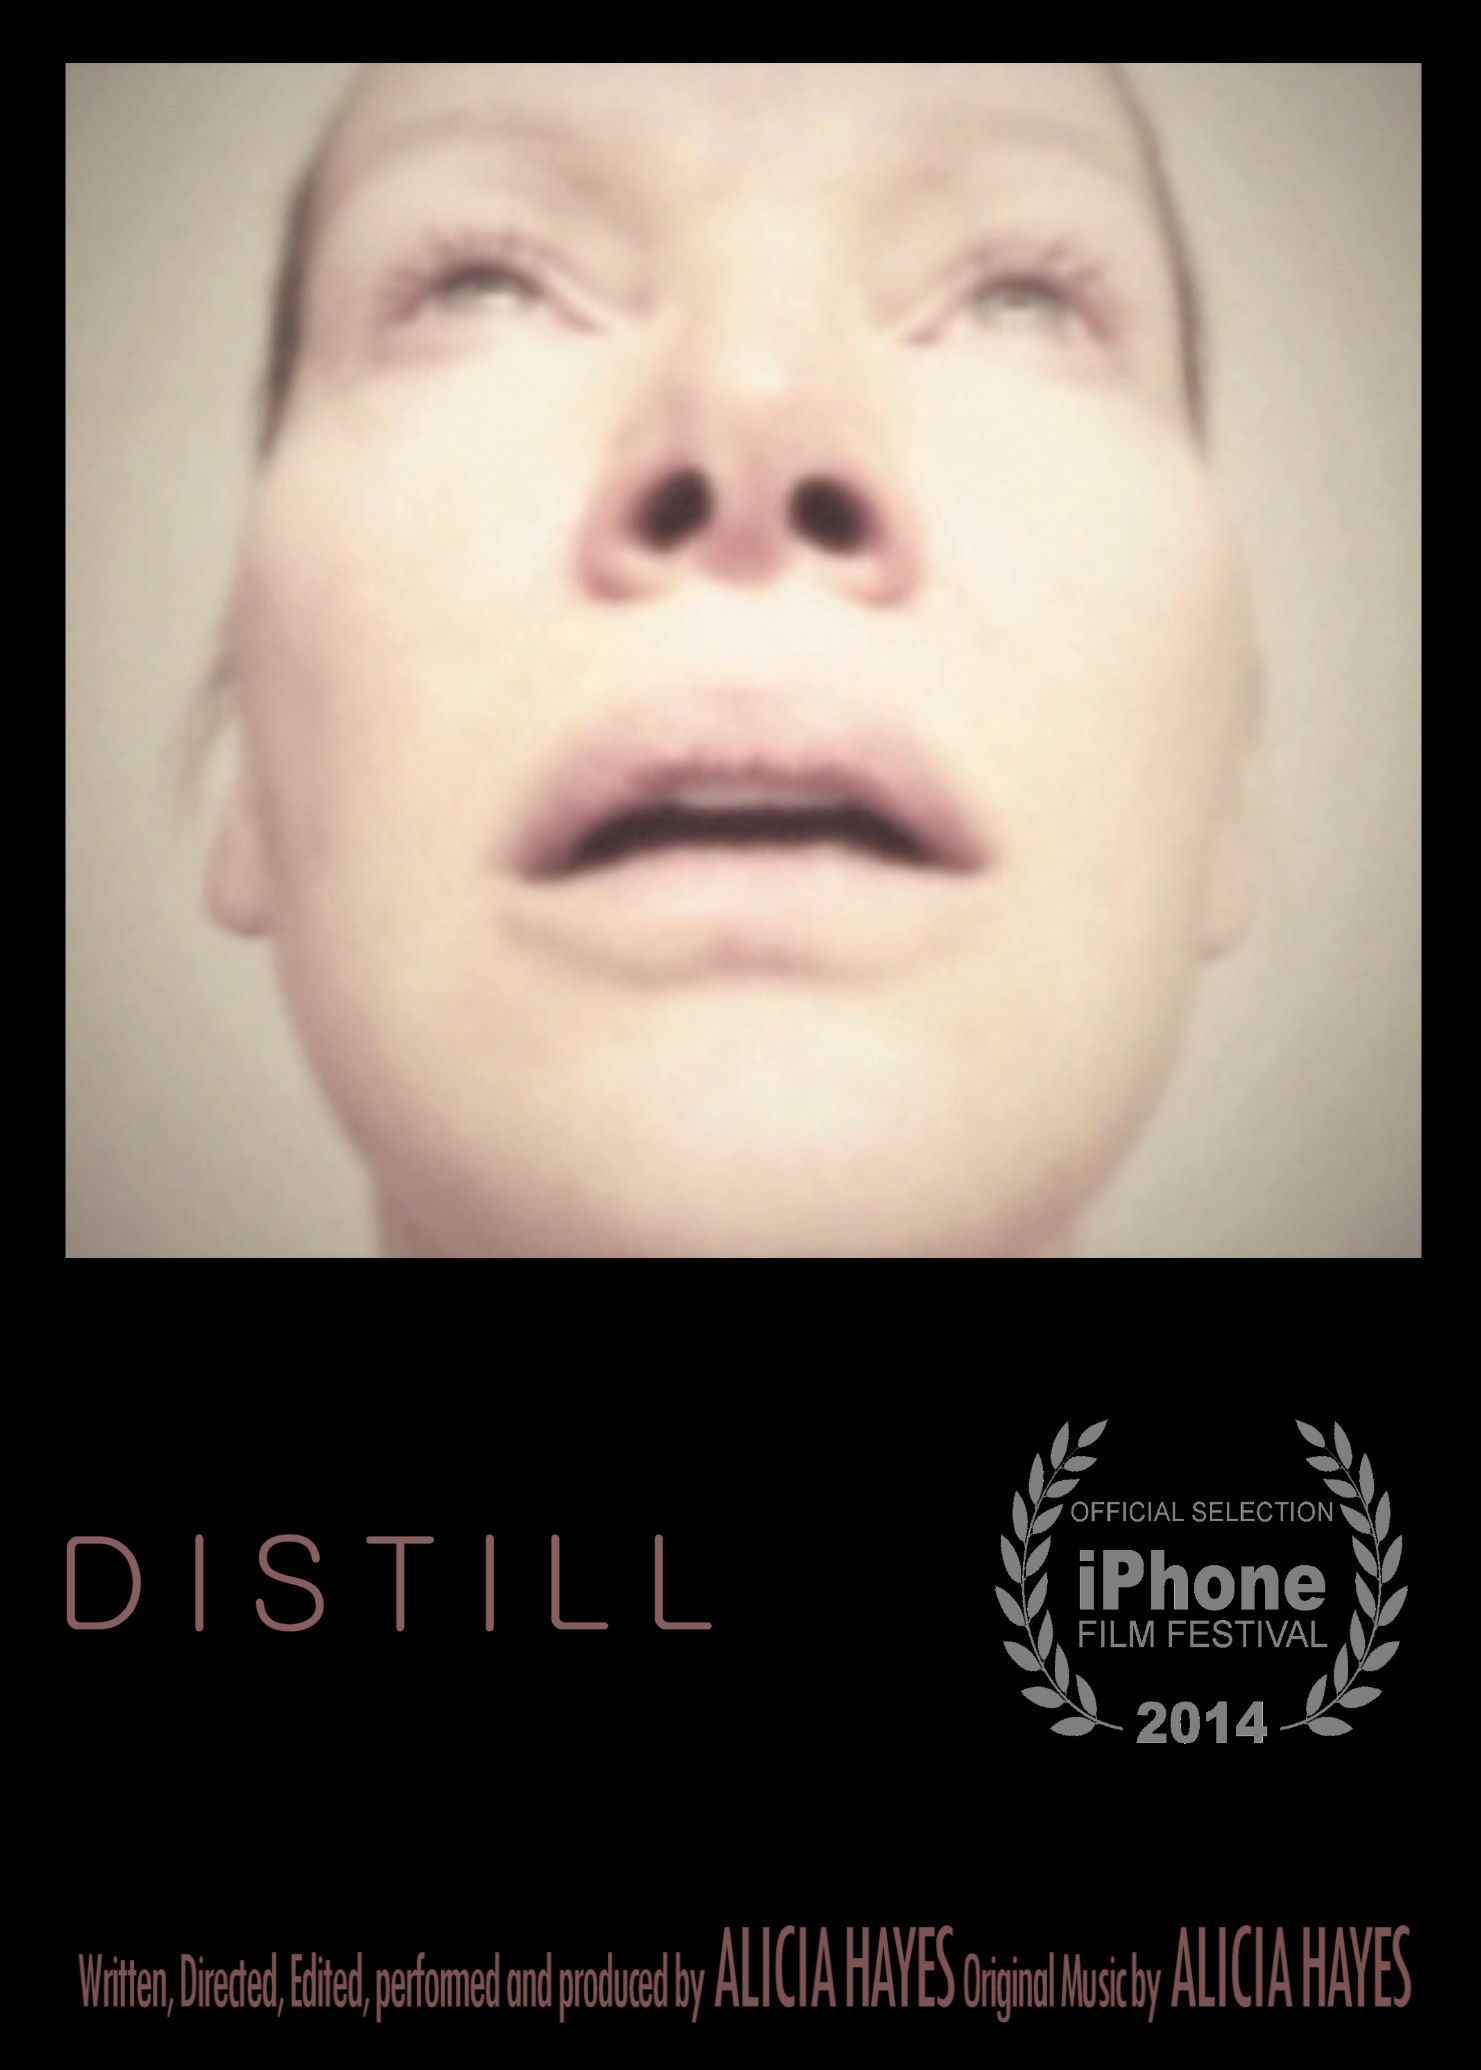 DISTILL is Alicia Hayes first short film.